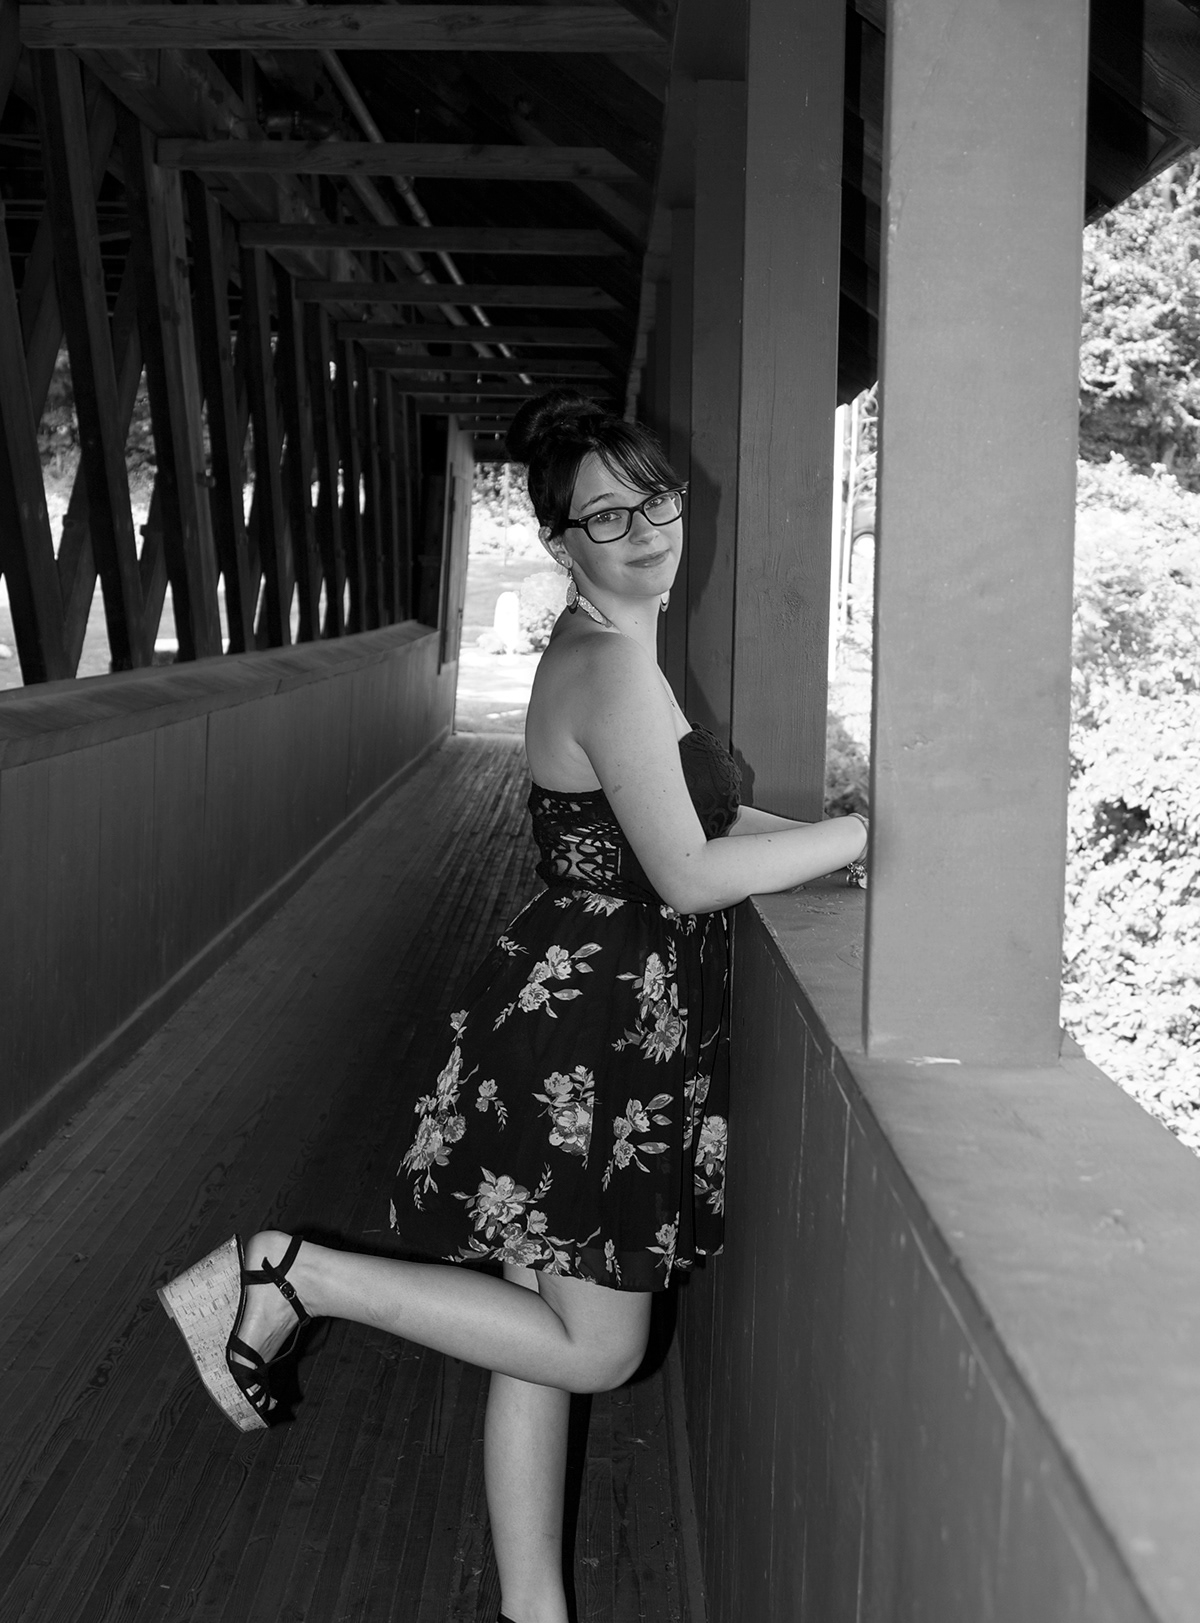 black and white Vermont coverdbridges